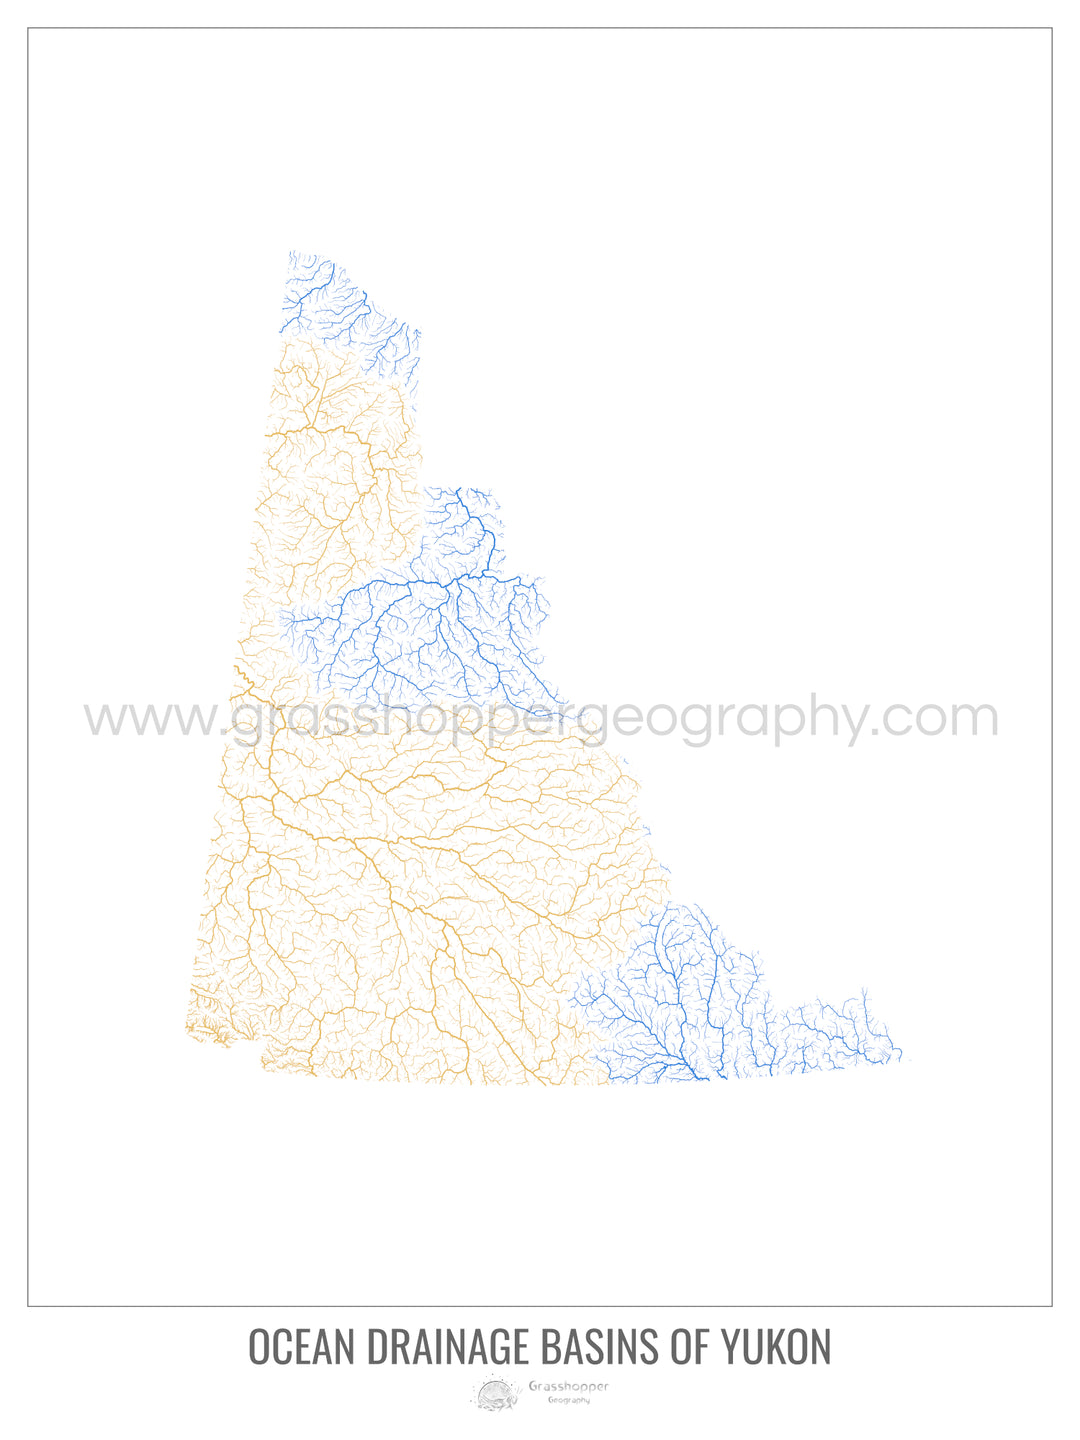 Yukon - Mapa de la cuenca hidrográfica del océano, blanco v1 - Impresión fotográfica